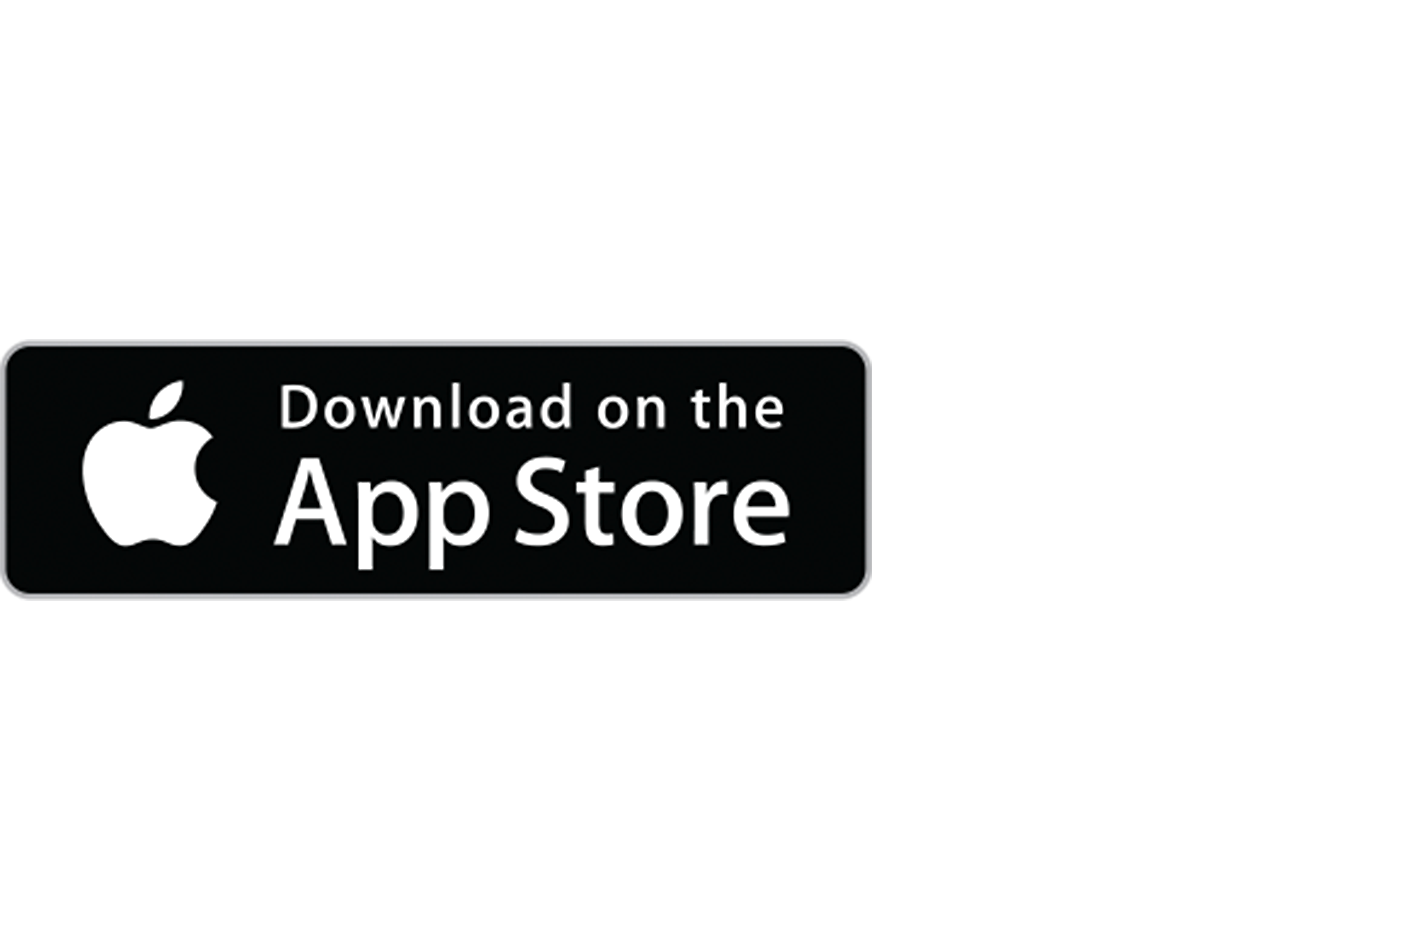 Εικόνα του λογότυπου του Apple App Store με τις λέξεις "Λήψη από το" στο επάνω μέρος